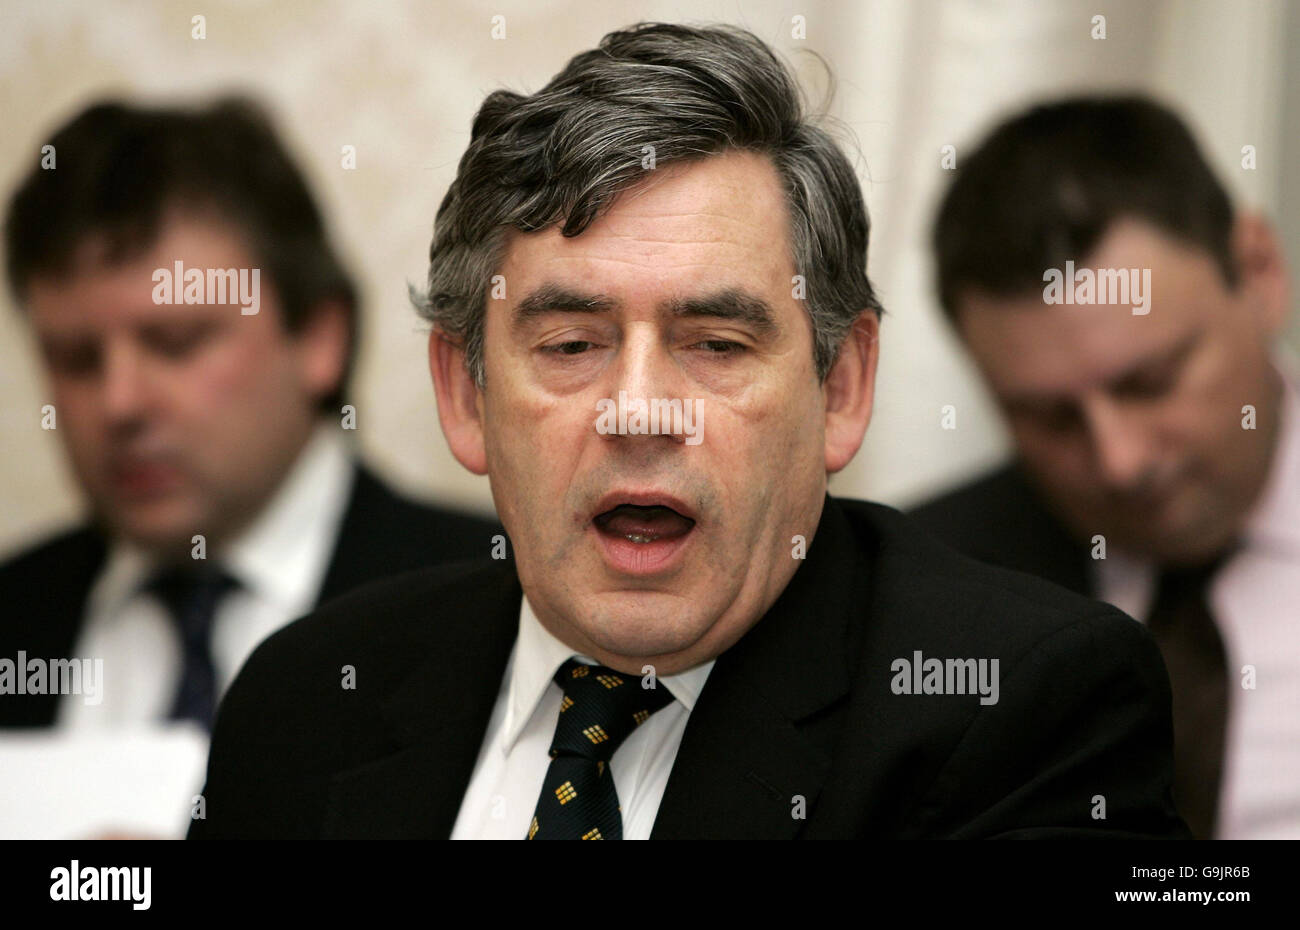 Il cancelliere britannico Gordon Brown parla durante un incontro con un gruppo di stakeholder di alto livello sul Centro finanziario di Londra al 11 Downing Street, Londra. Foto Stock